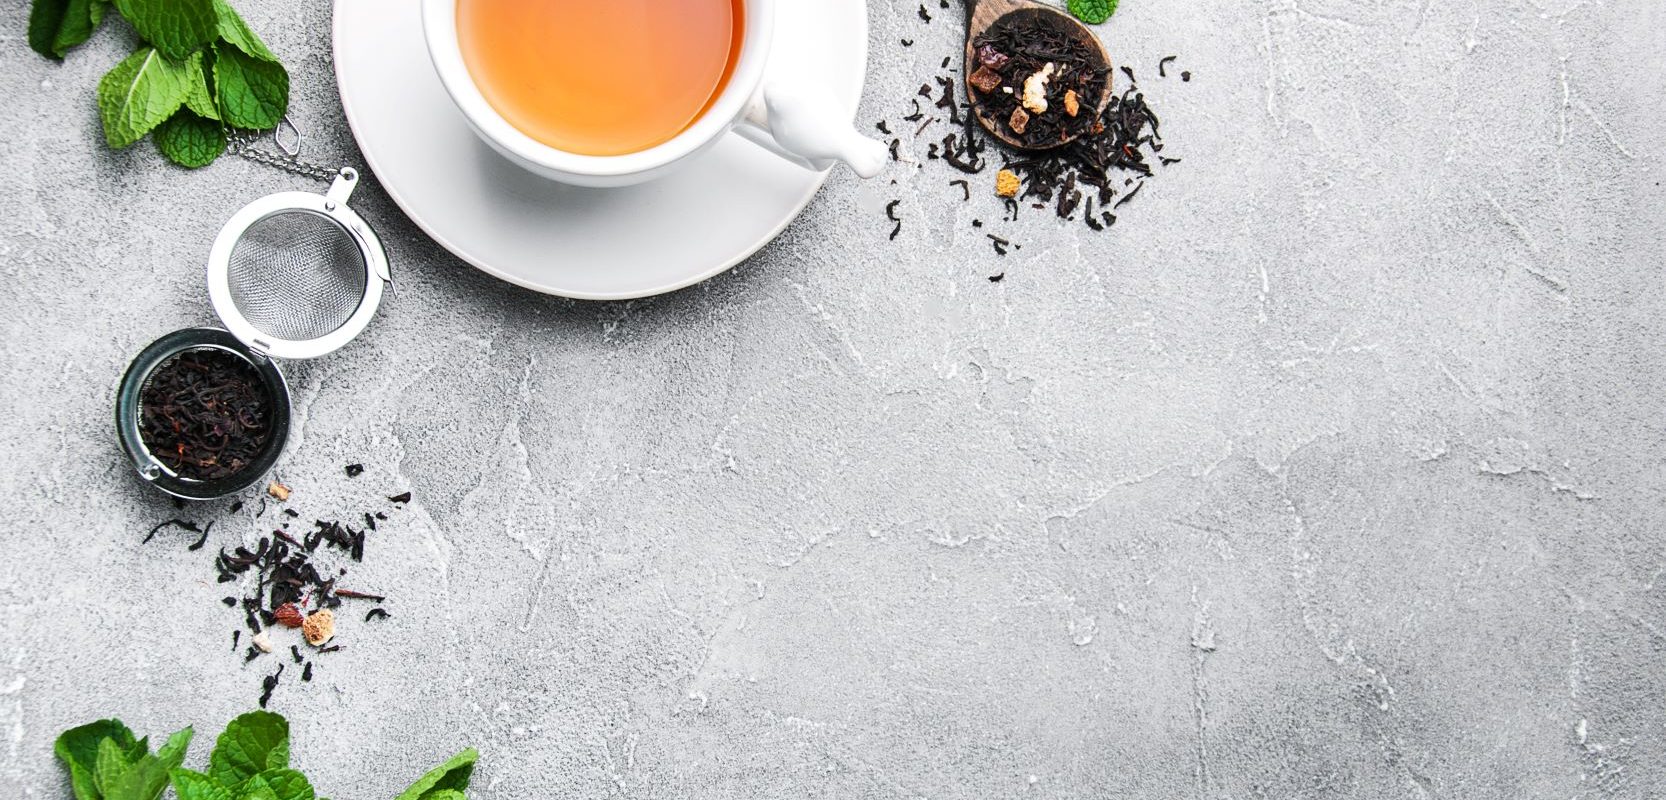 Co warto wiedzieć o herbacie? Herbata w białej filiżance na betonowym tle.